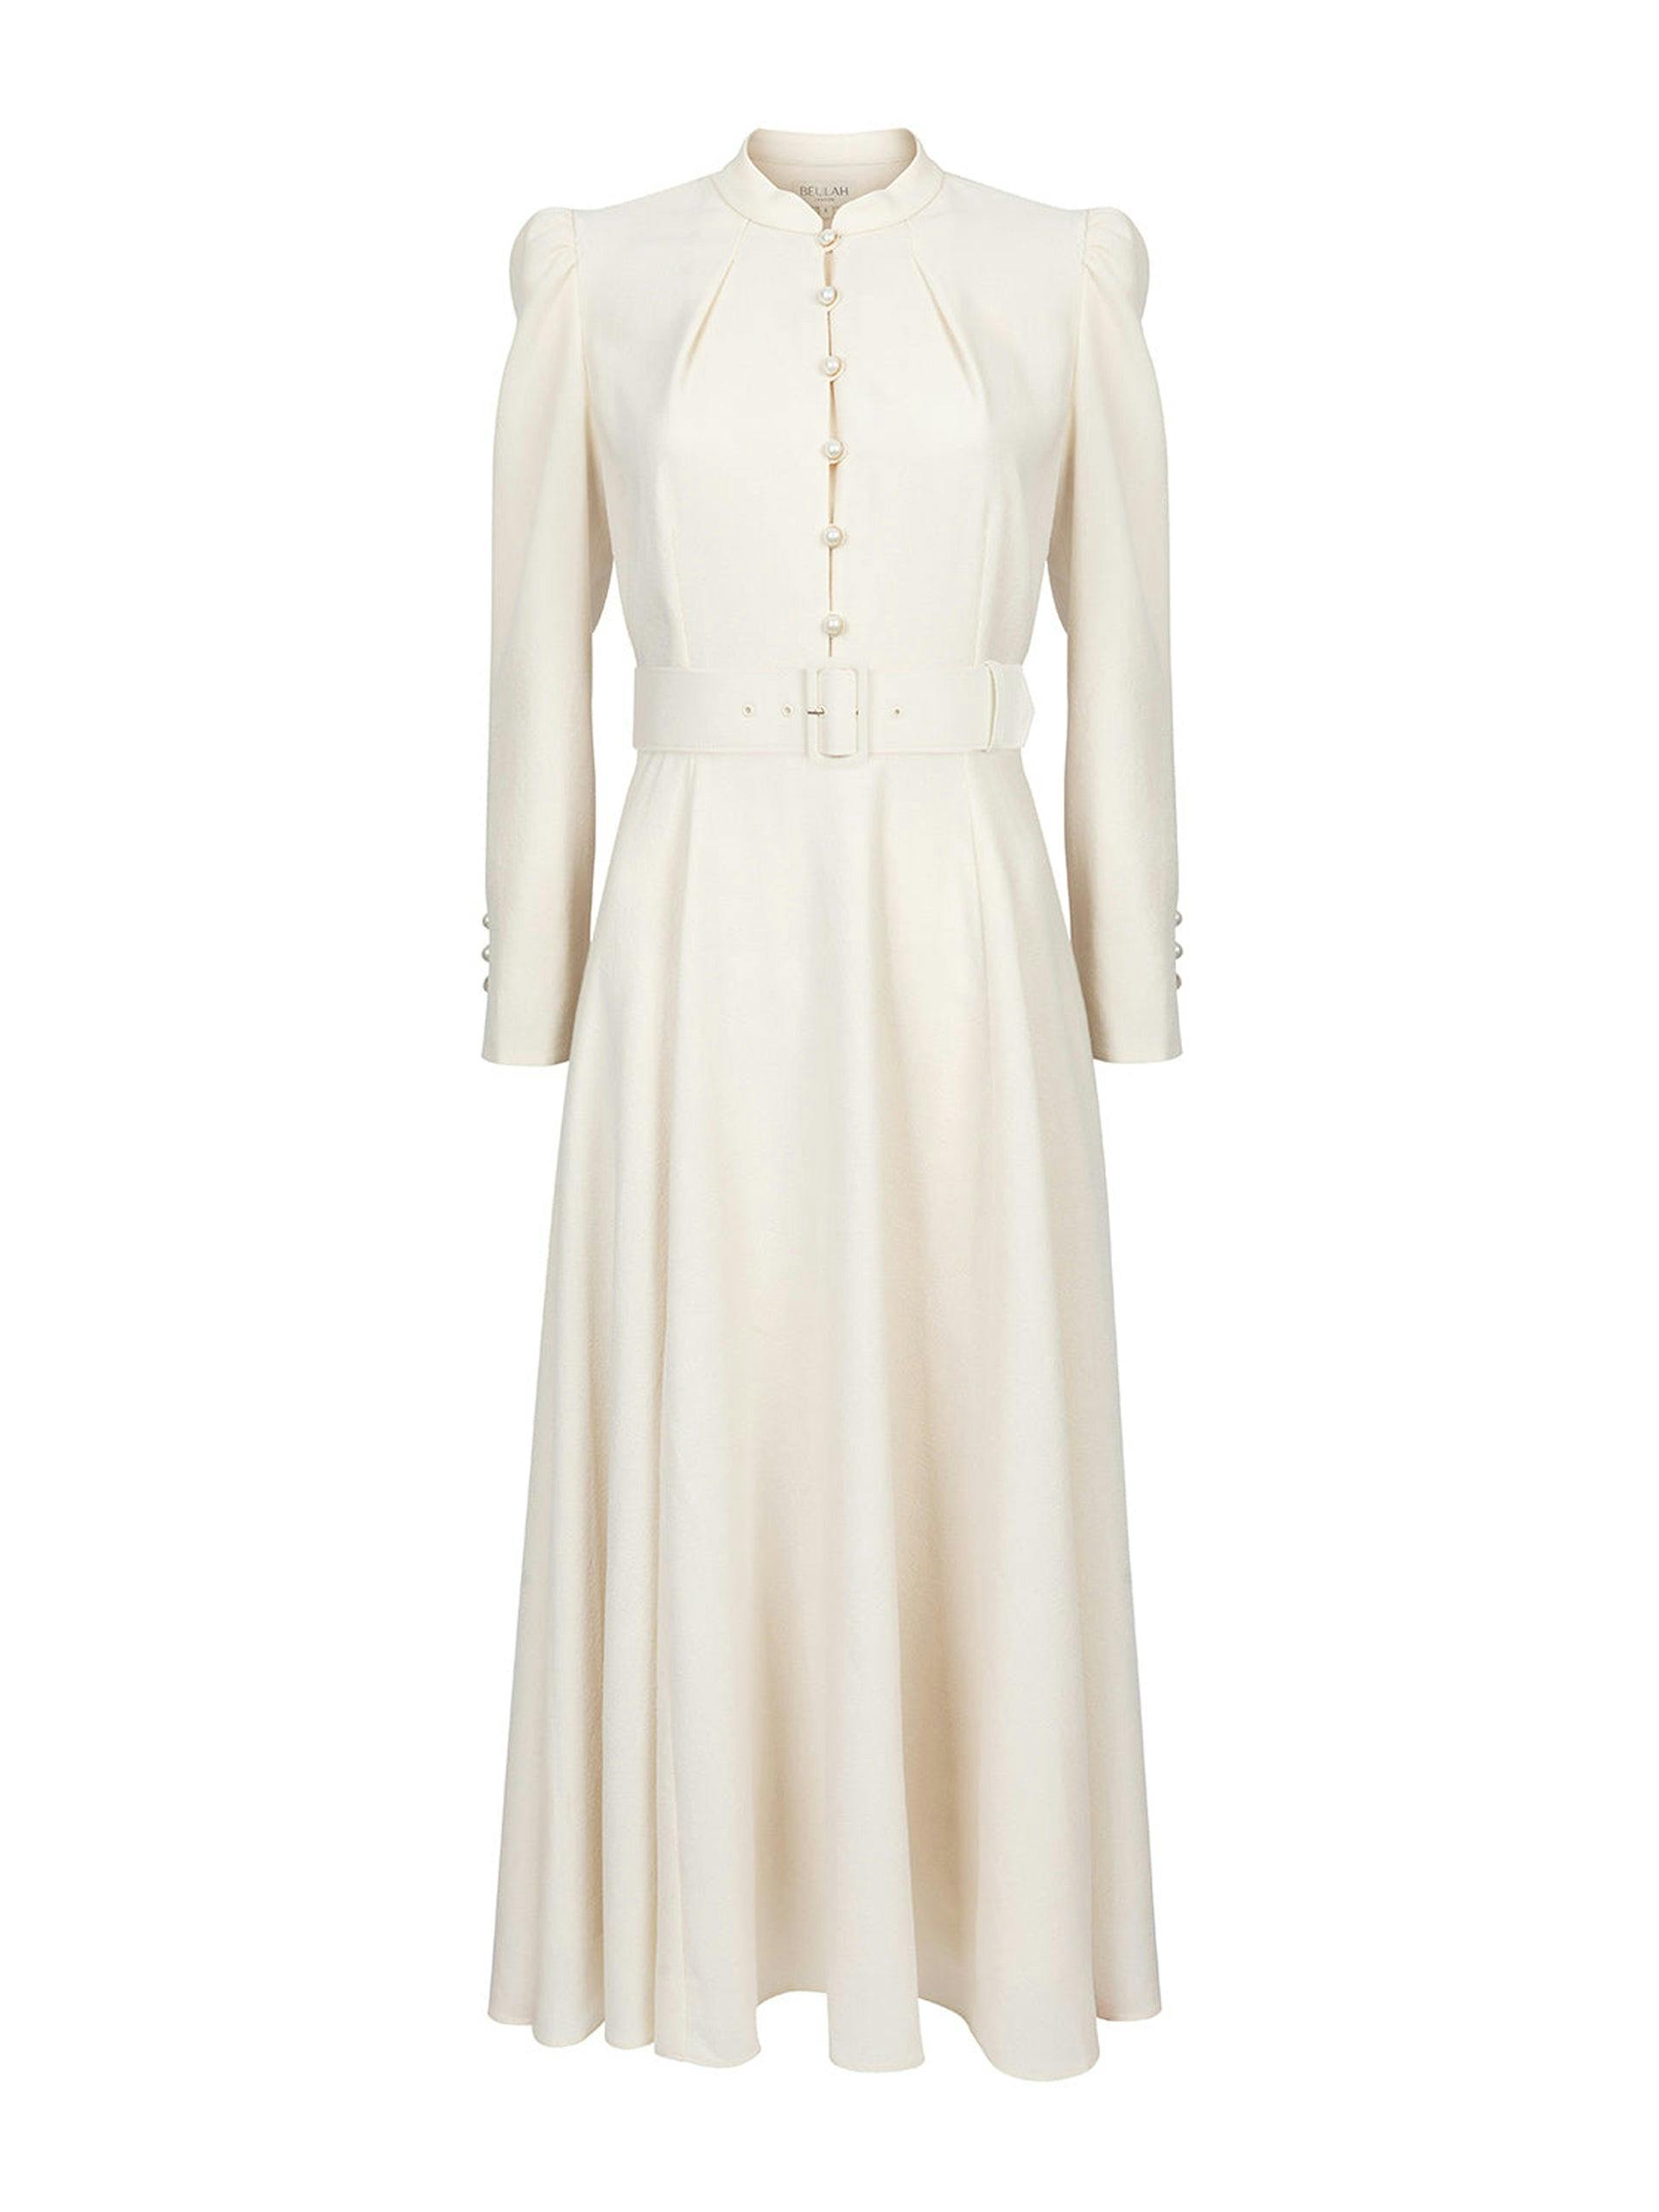 Yahvi cream dress